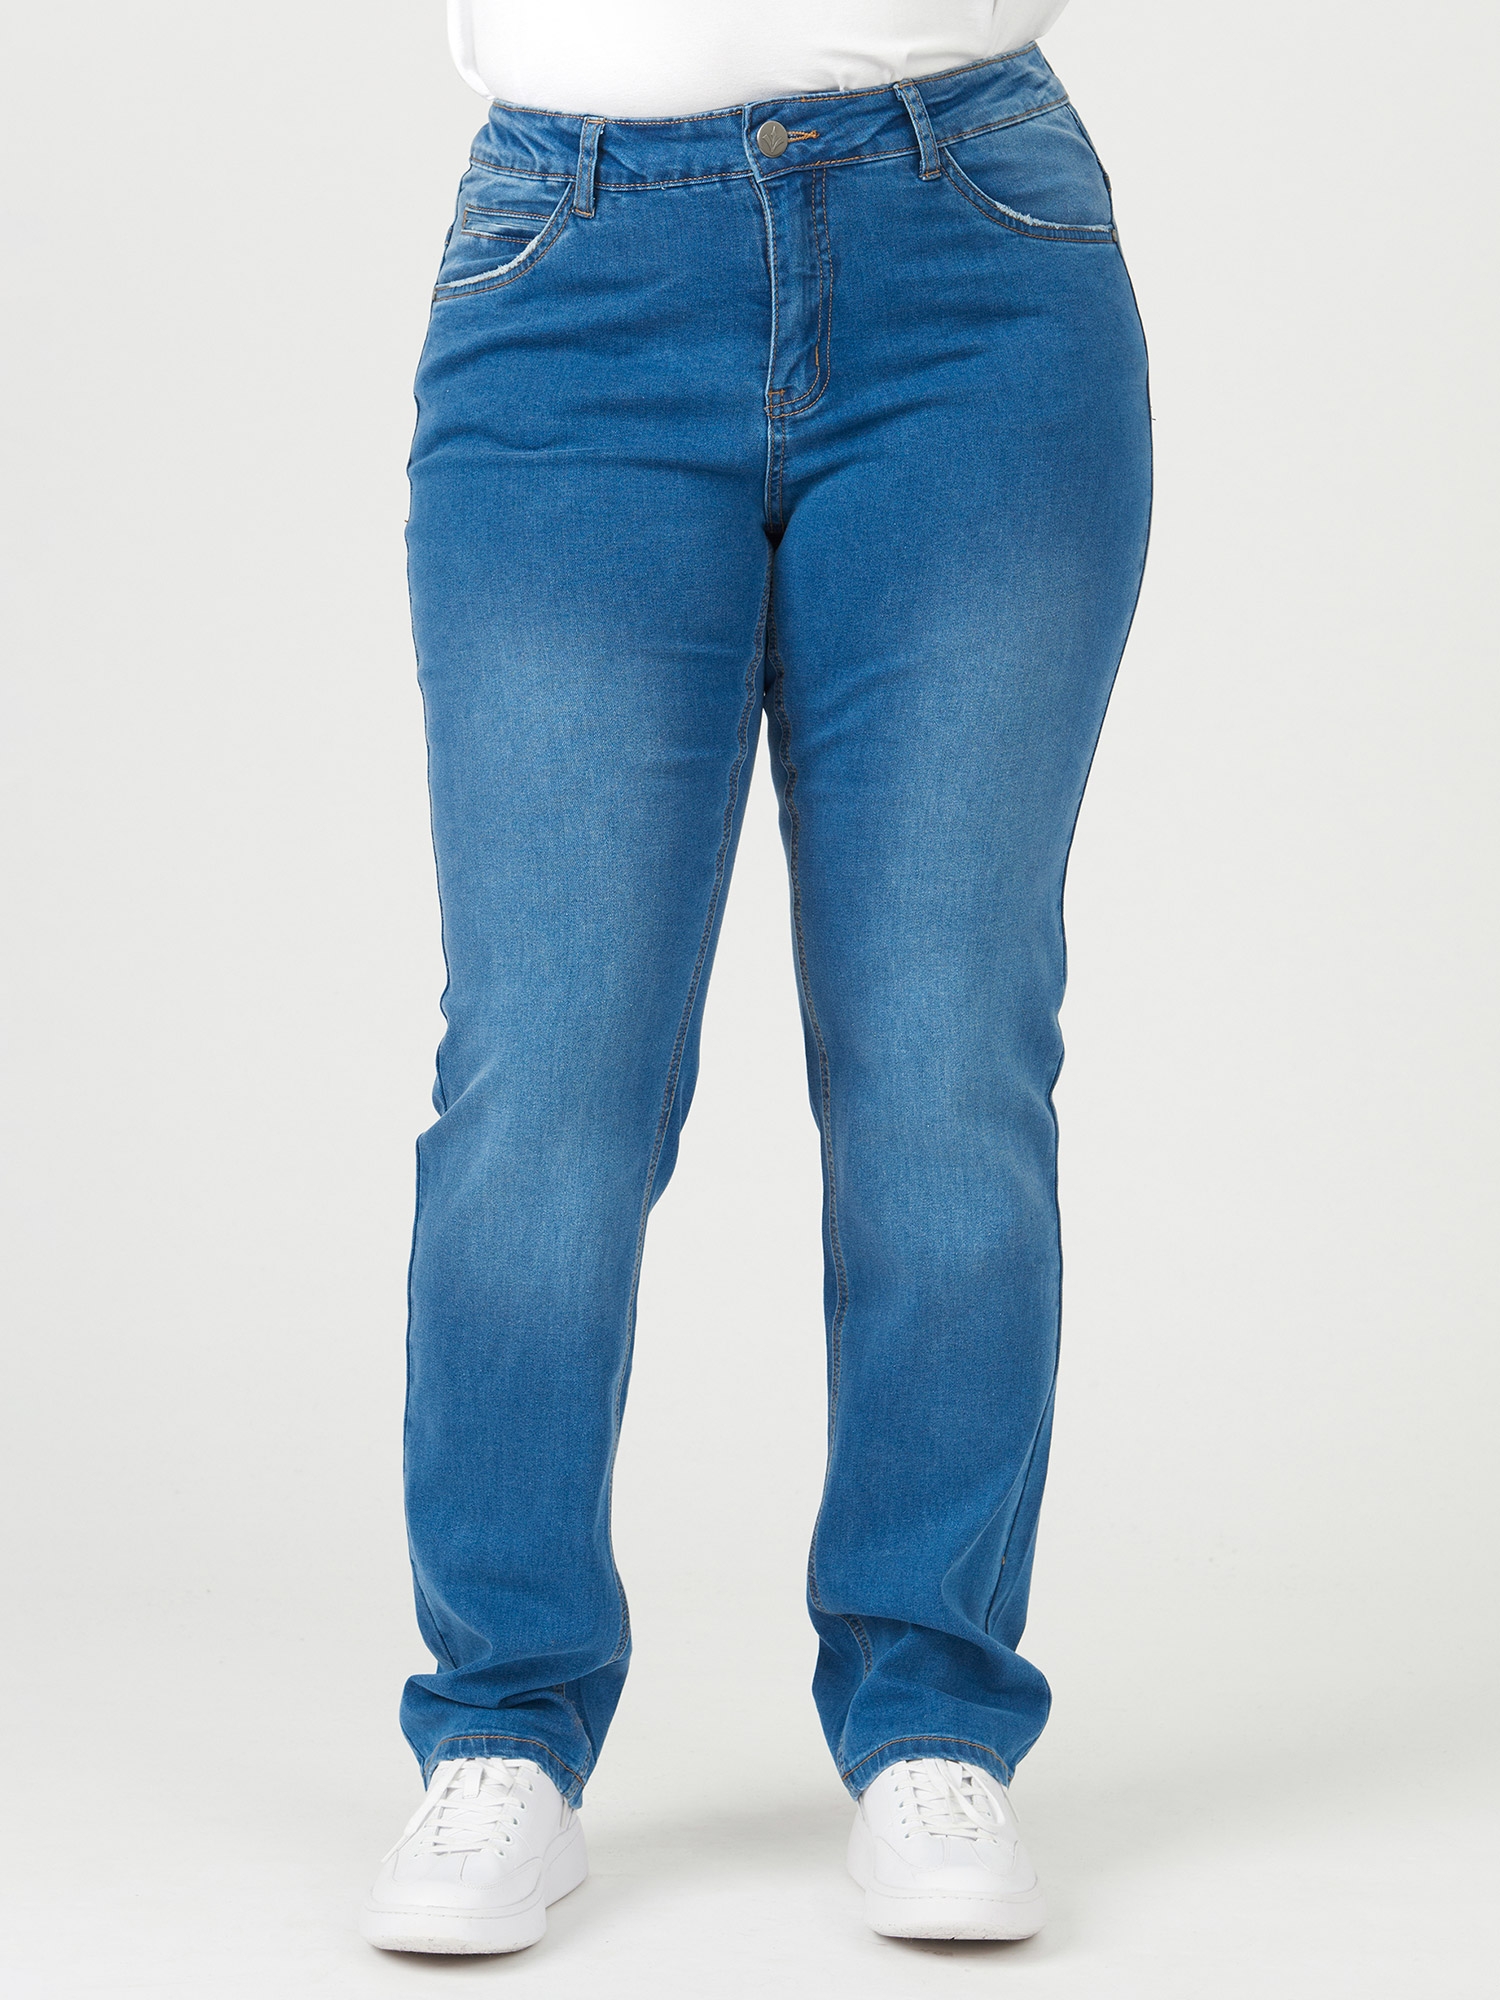 MONACO - Lyse jeans med høyt liv fra Adia